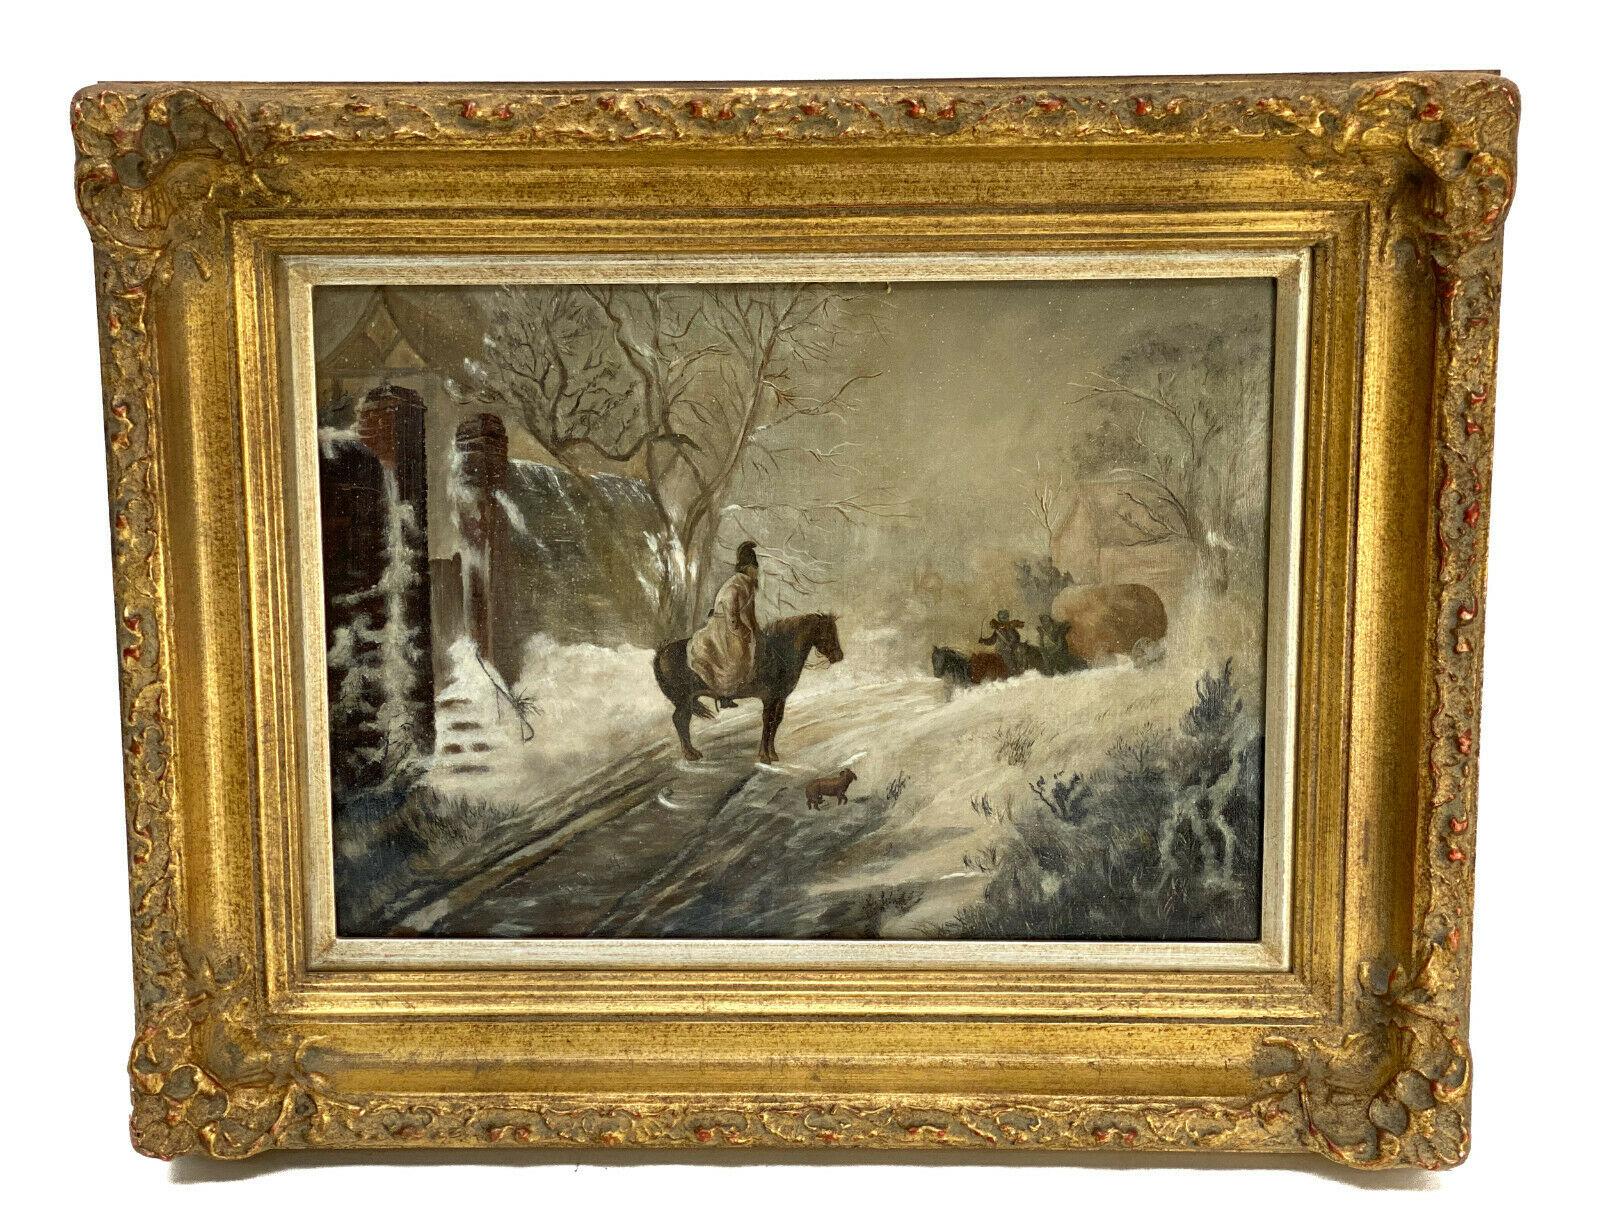 Continental Öl auf Leinwand Gemälde verschneiten Pferdeszene, 19. Jahrhundert.

Das Gemälde stellt einen Reiter dar, der vor einer winterlichen Schneelandschaft auf die Ankunft eines Wagens wartet. Künstler signiert am unteren Rand -